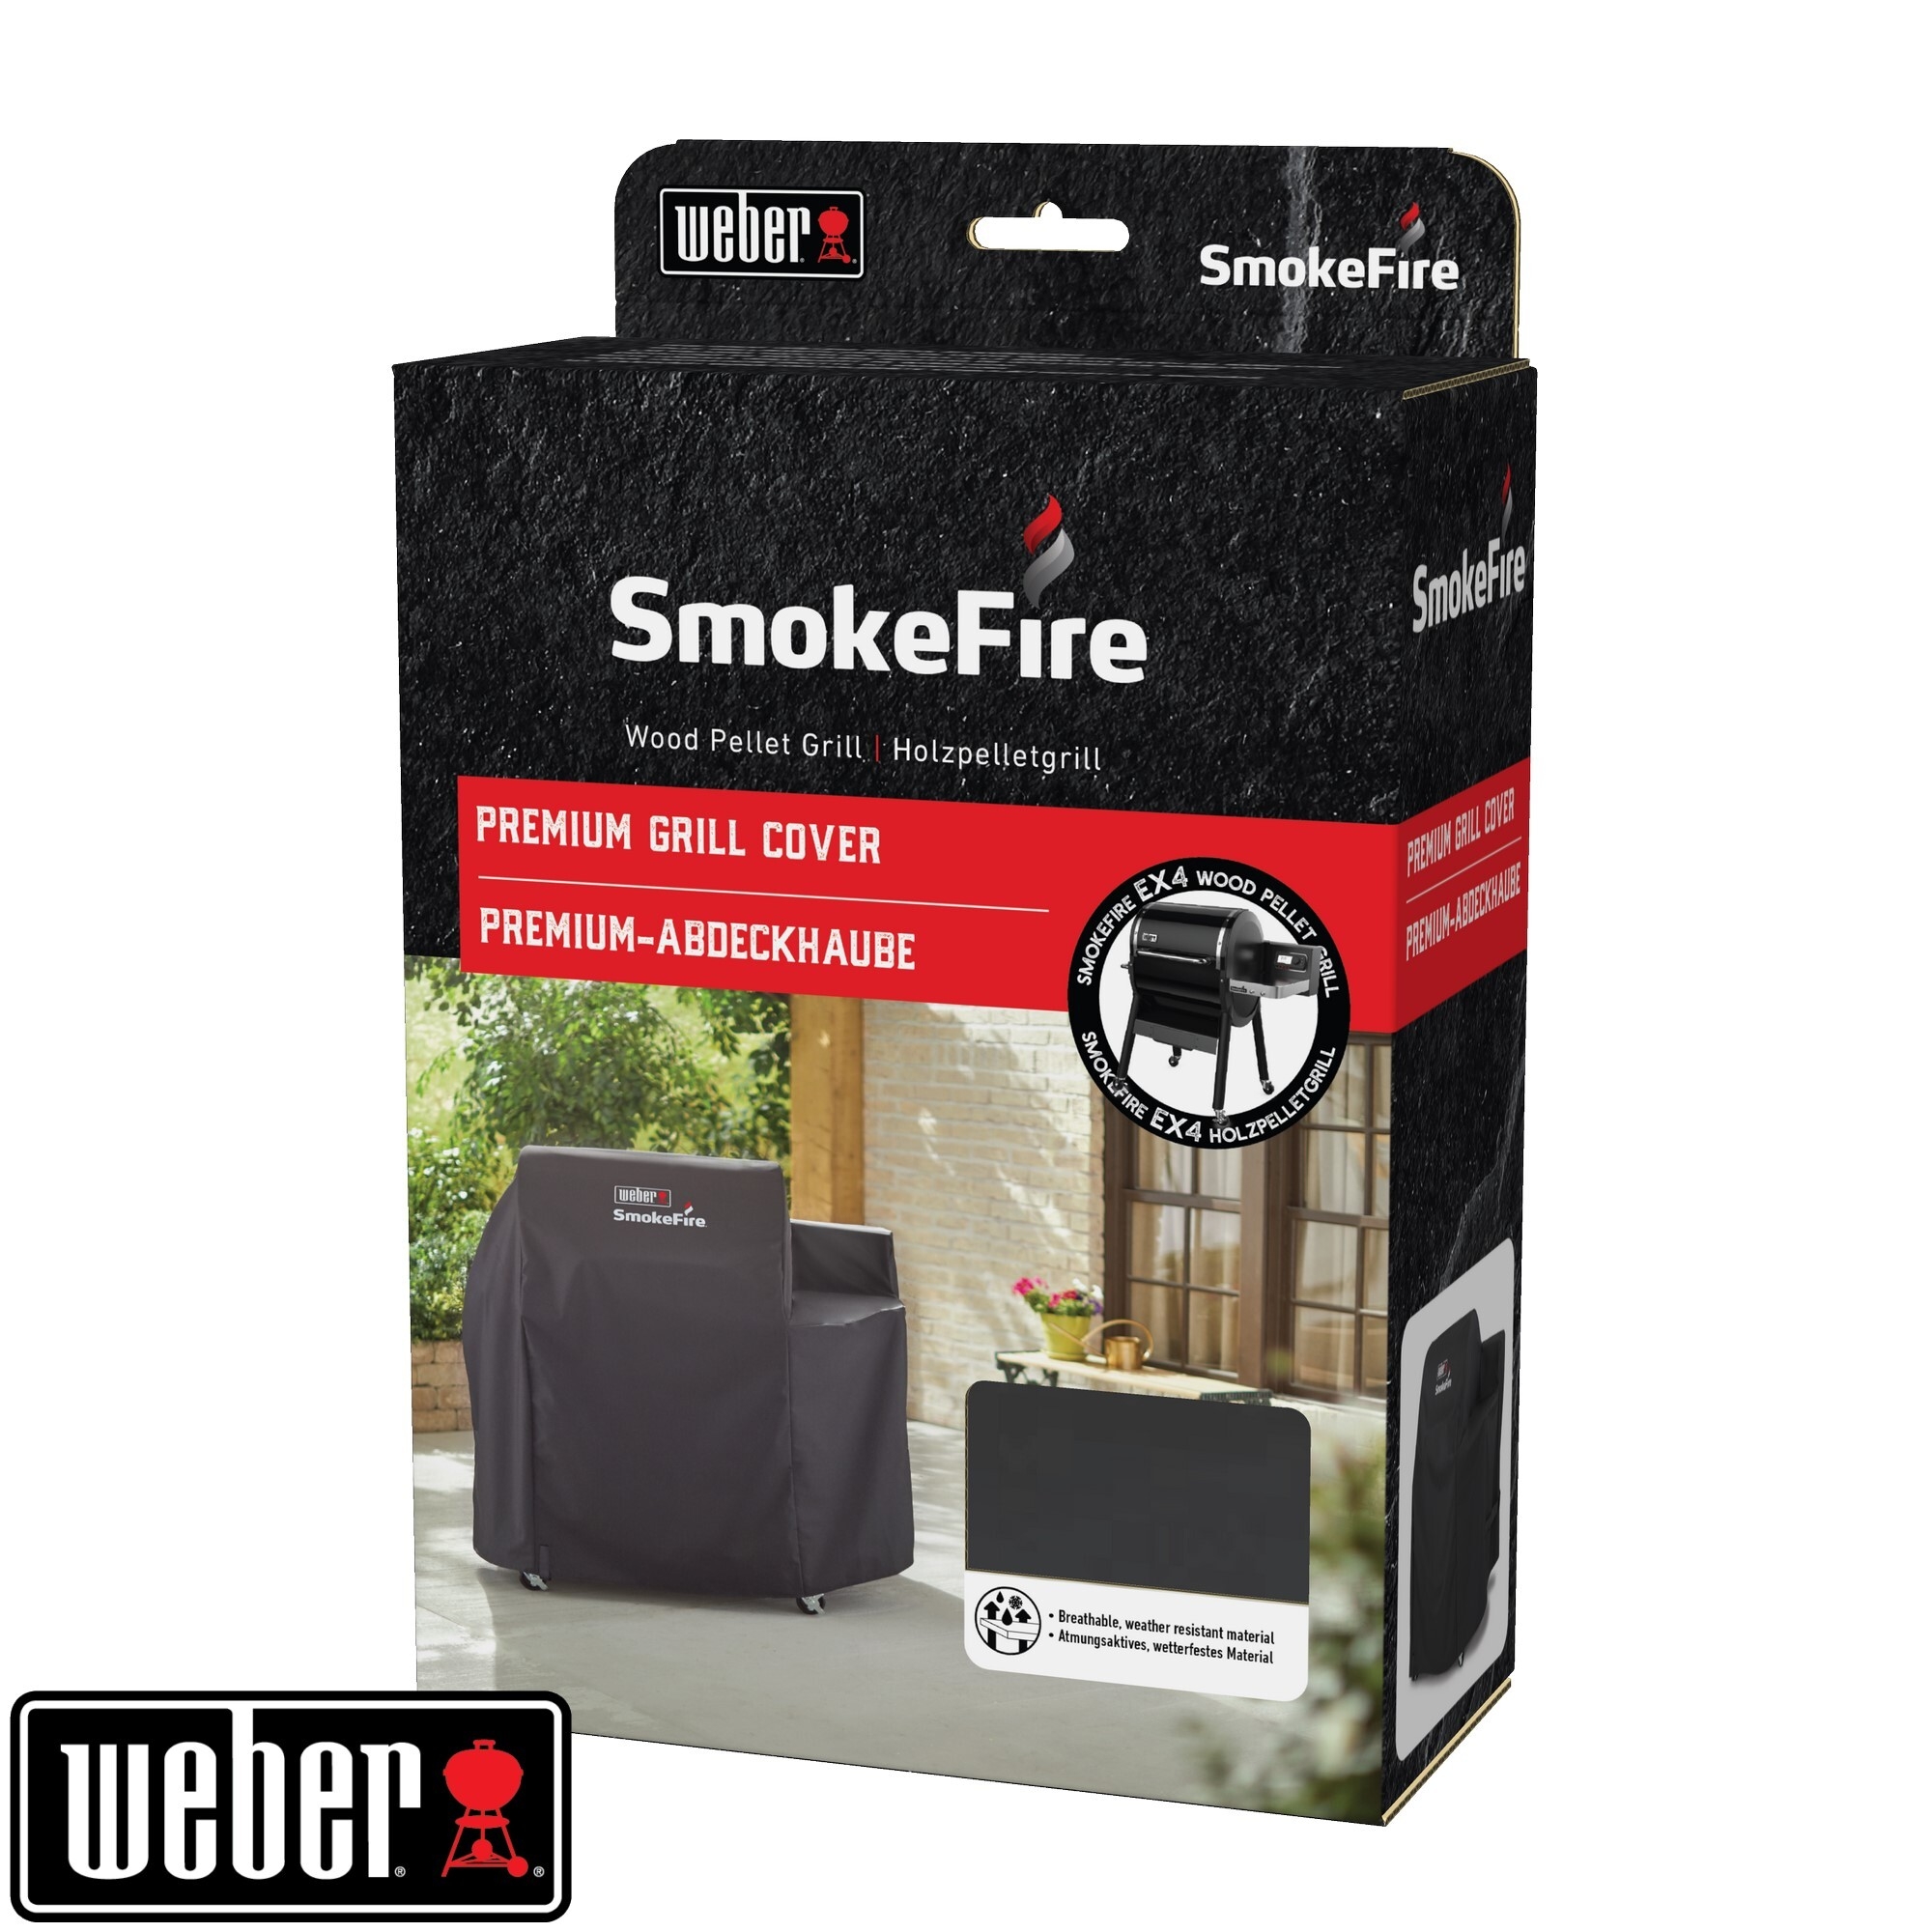 Premium Abdeckhaube - für SmokeFire EX4